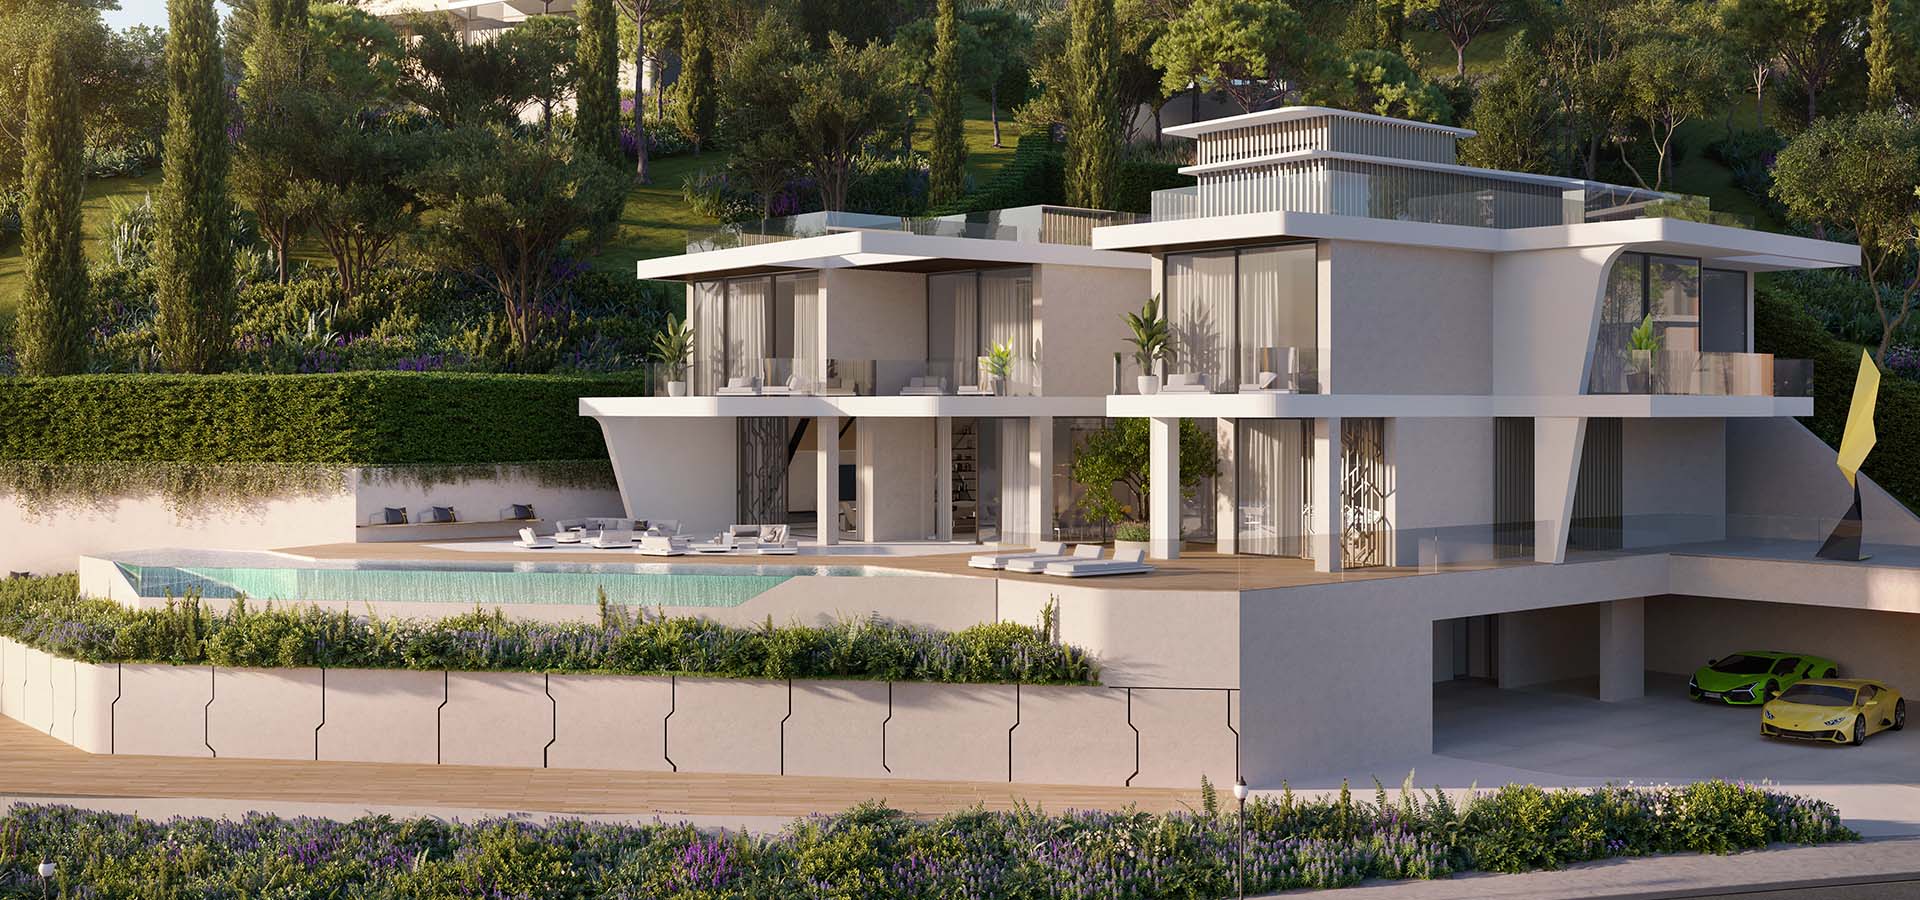 imagen 5 de Tierra Viva: casas inspiradas por Lamborghini en la Costa del Sol.